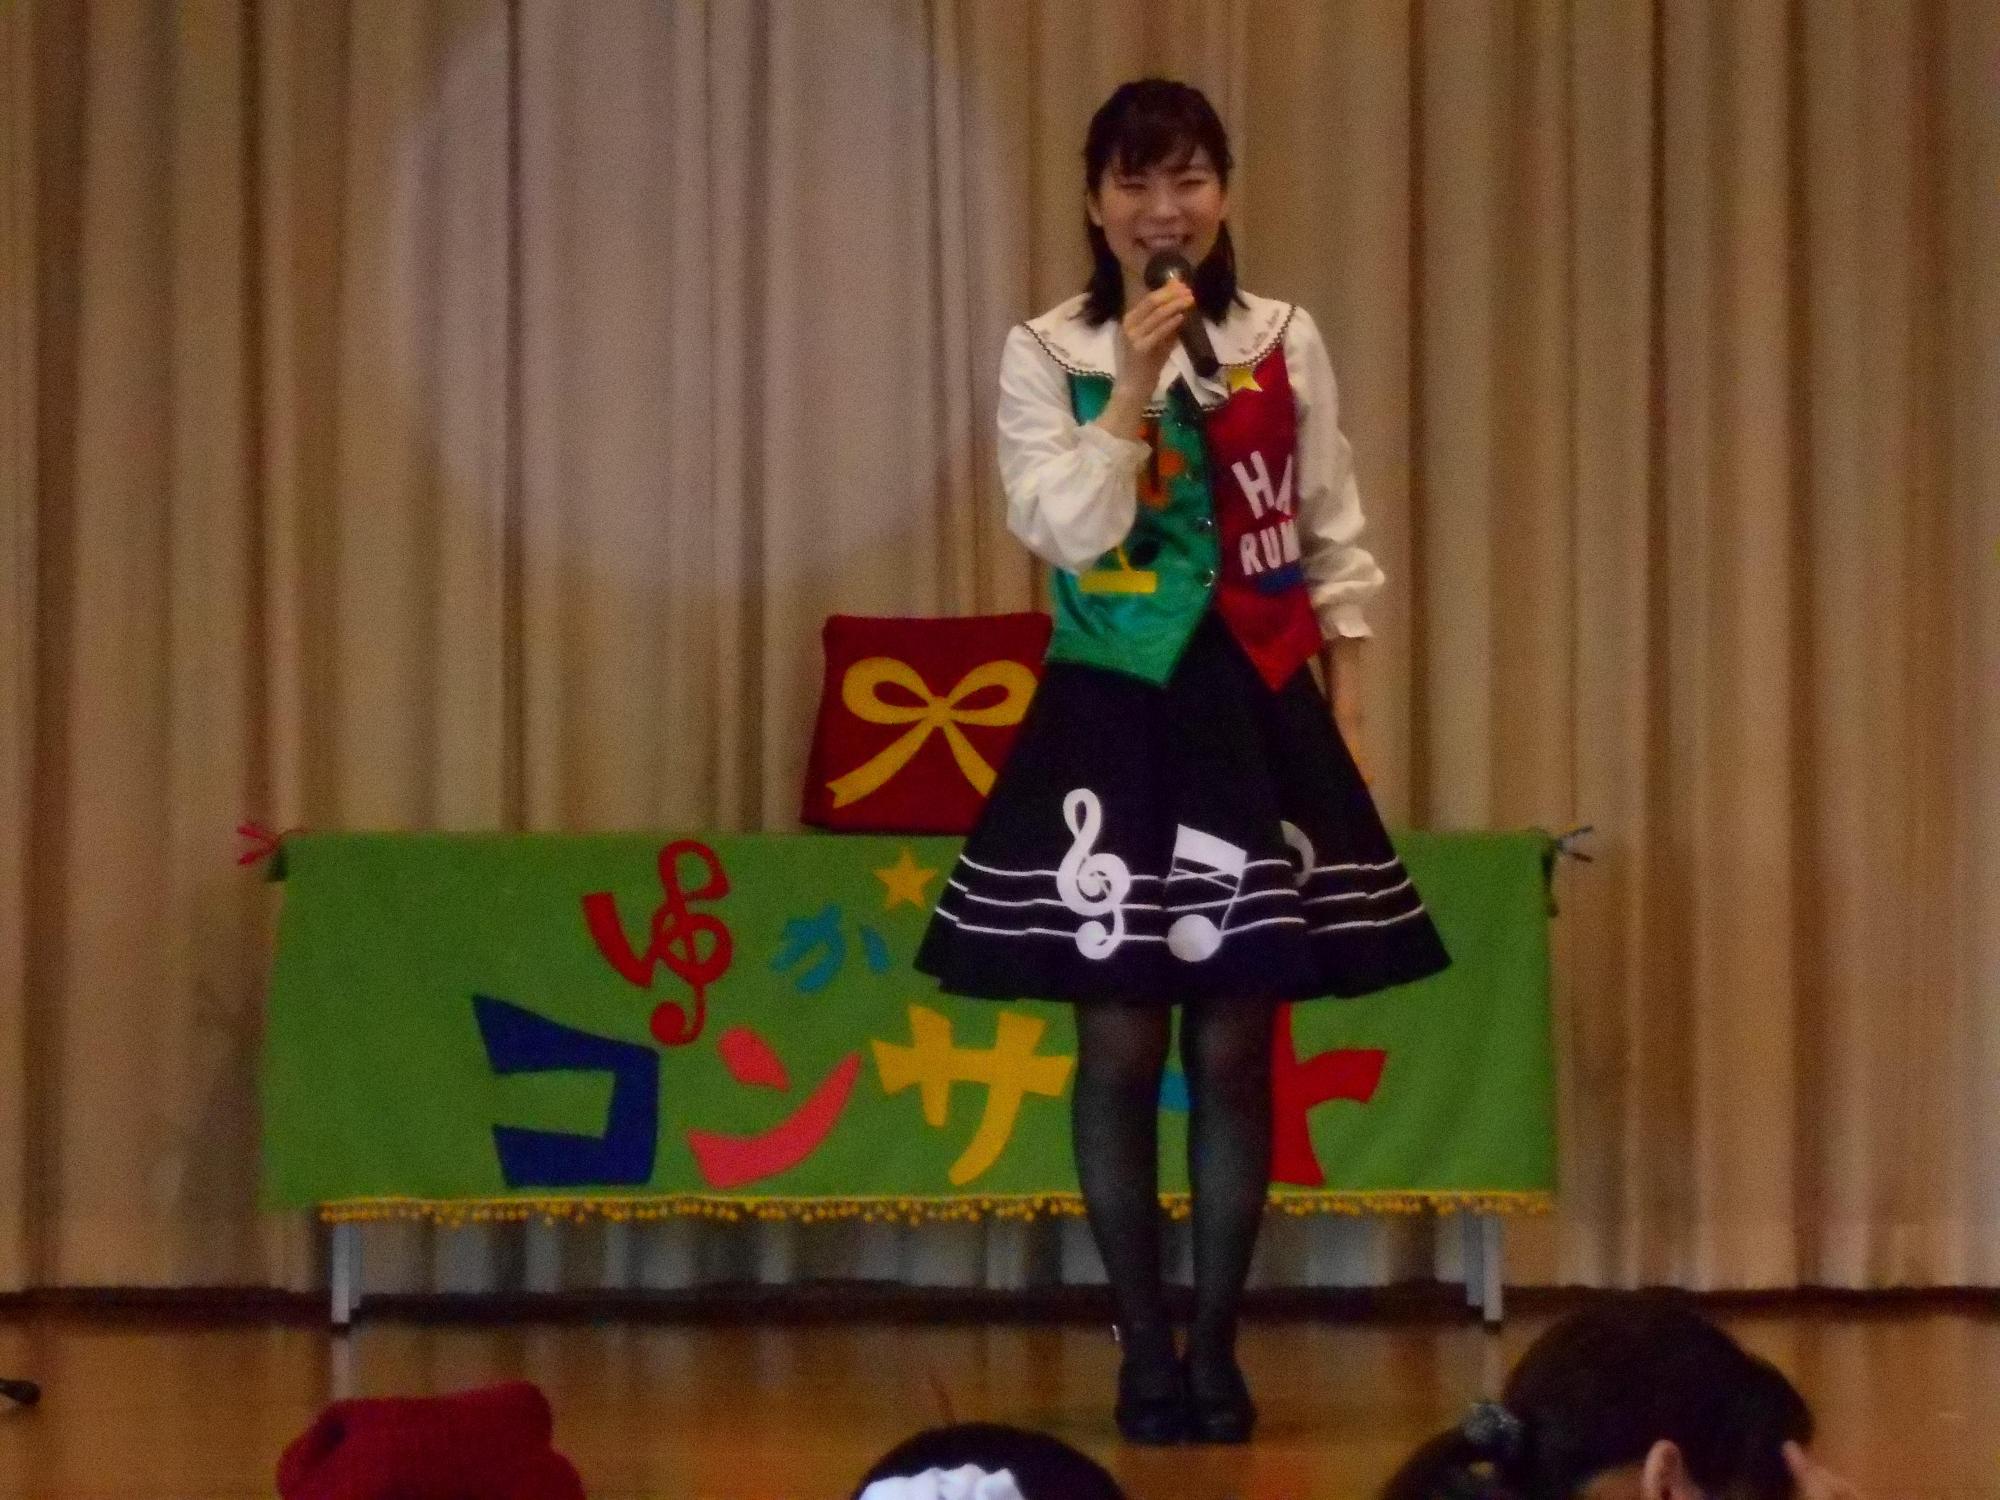 ステージの上でスカートをはいた歌のお姉さんがマイクを持ち話をしている写真